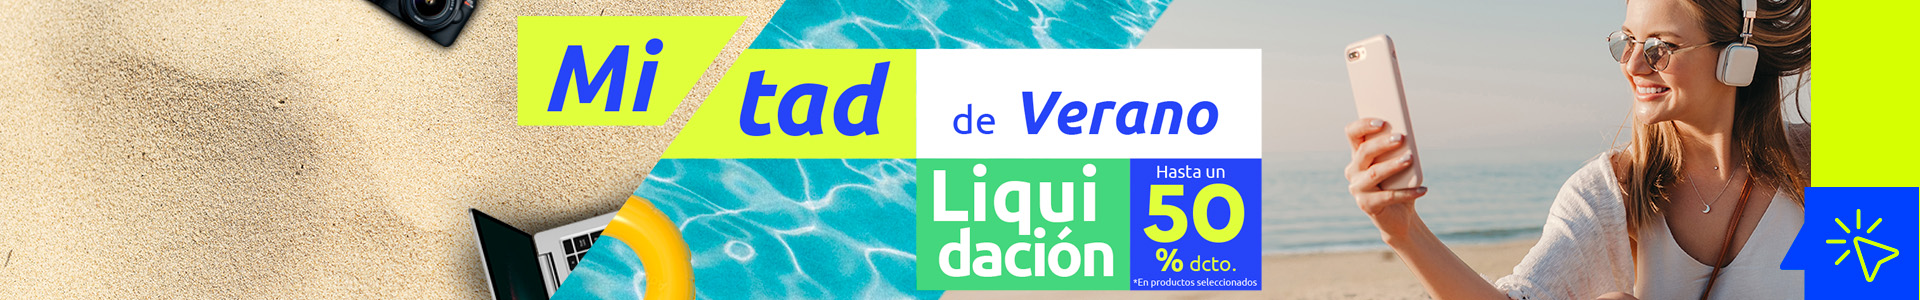 Banner Header Campaña Liquidación Verano